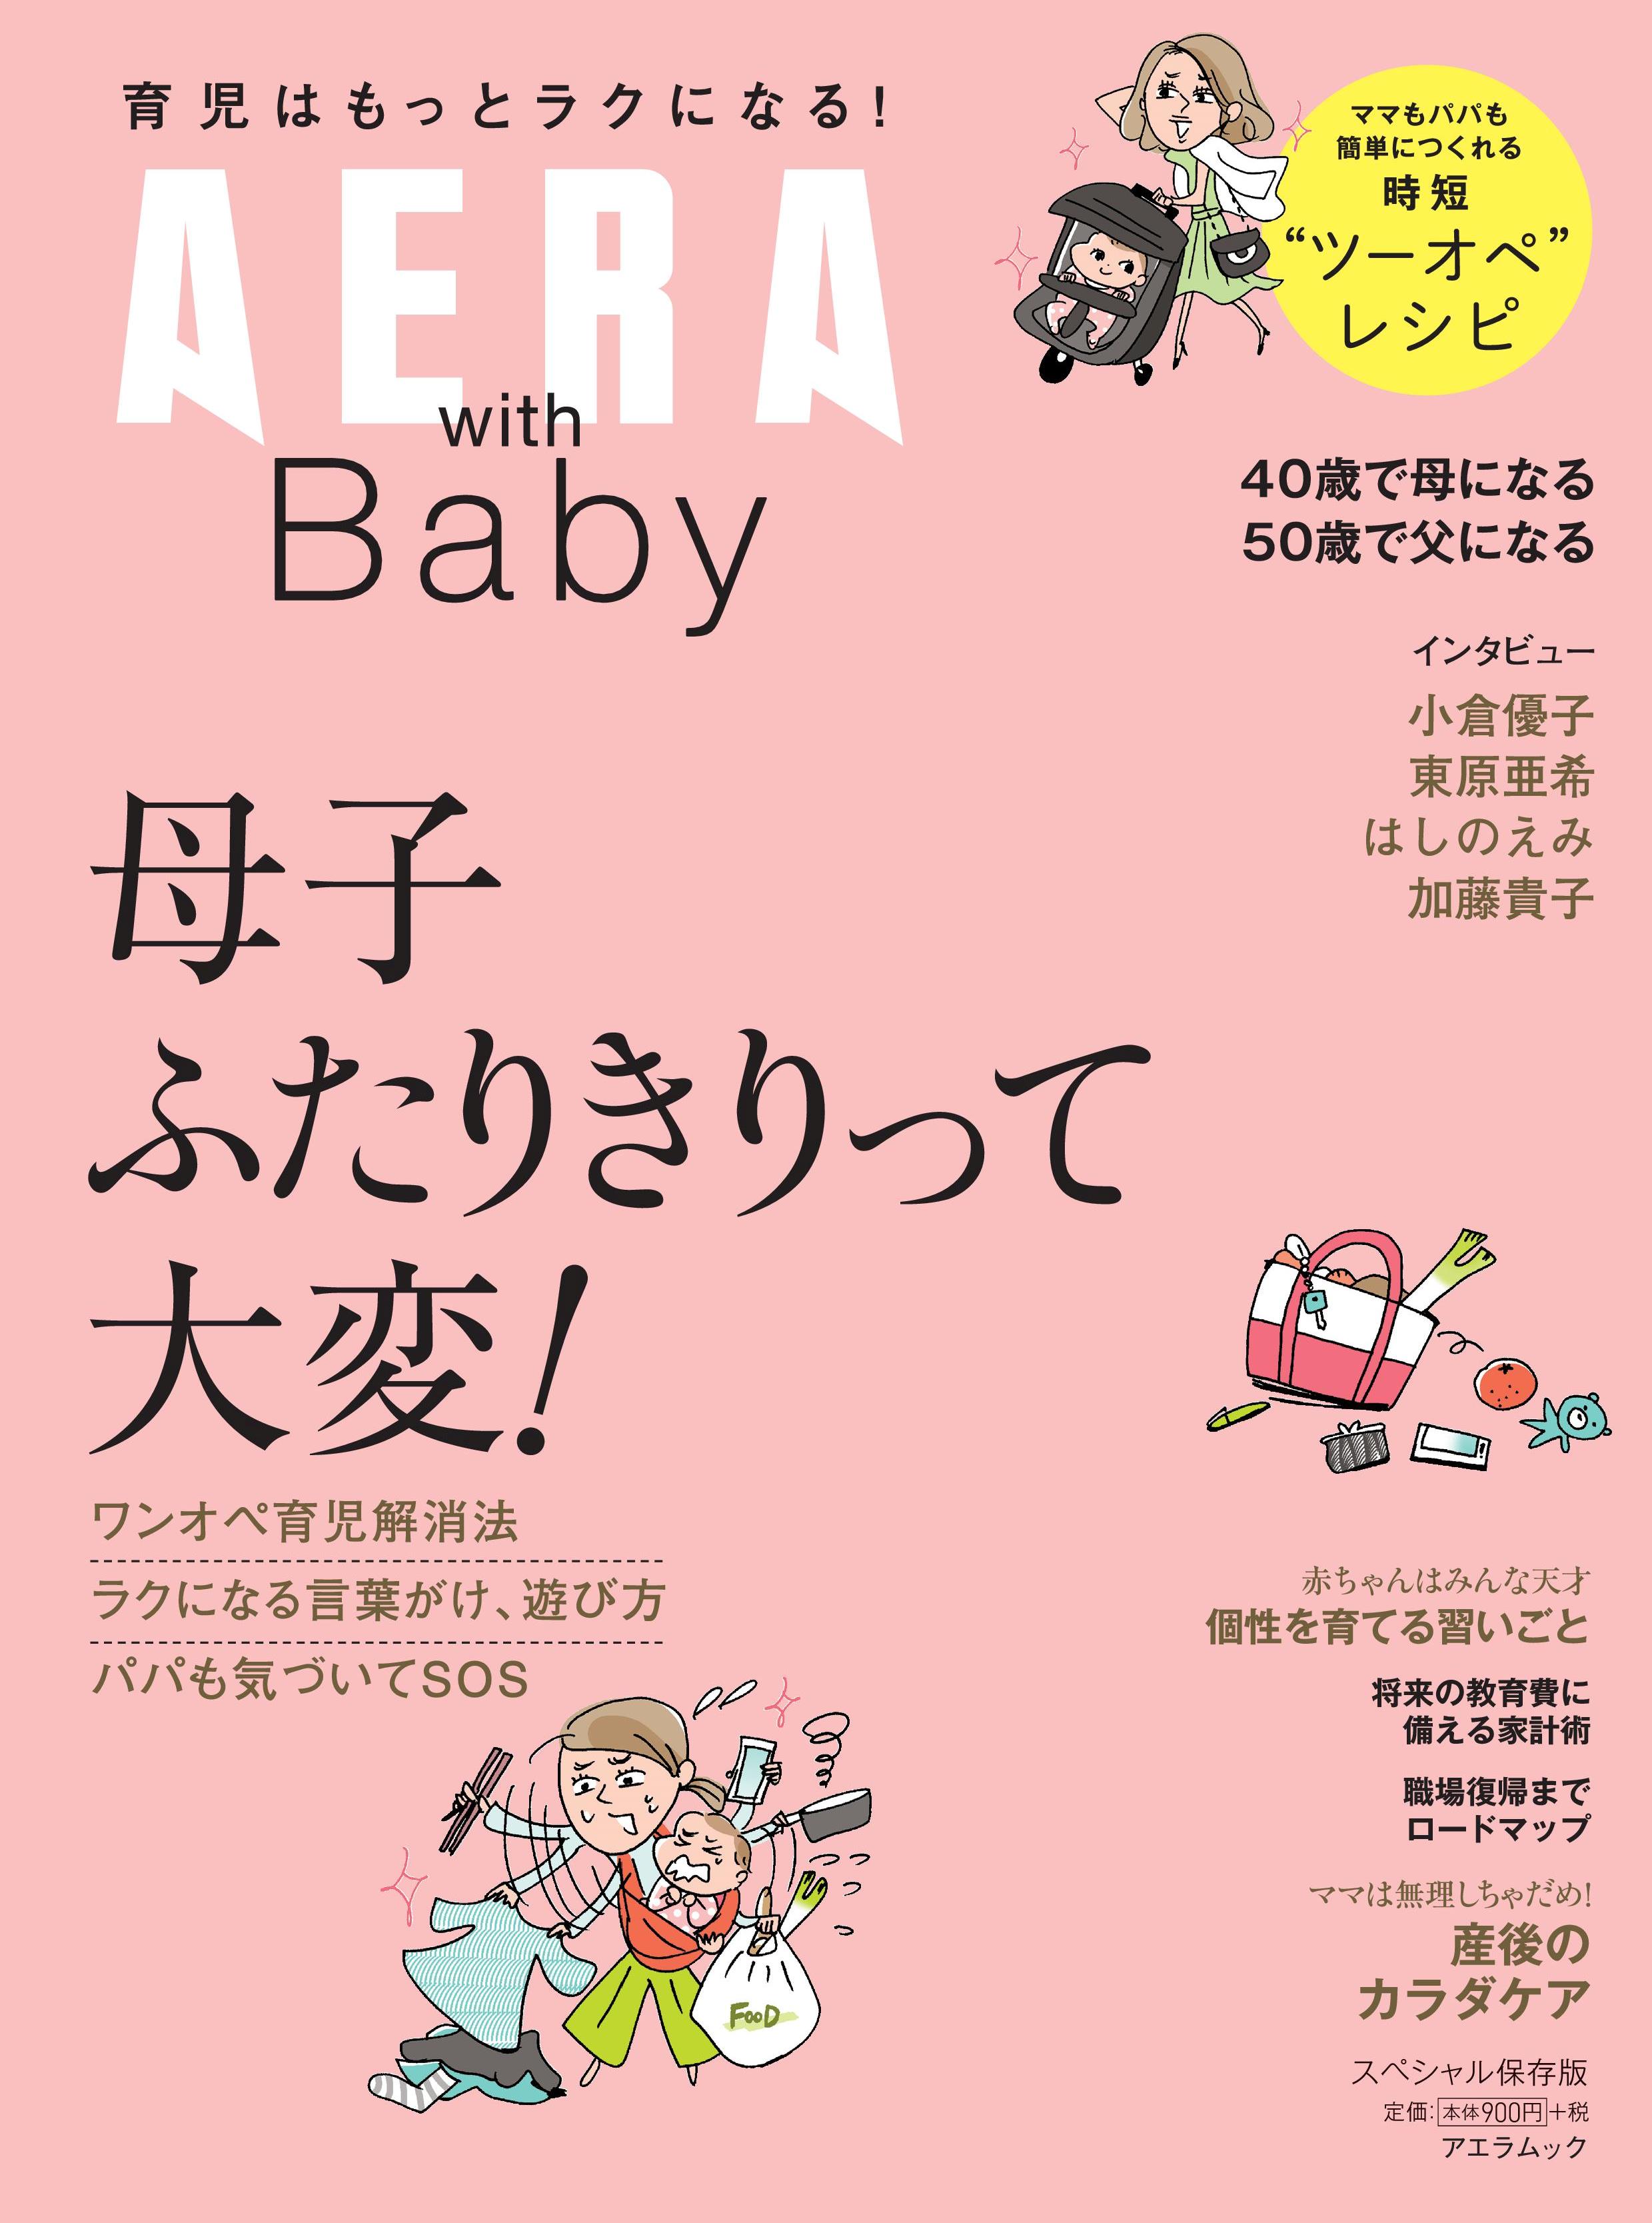 ワンオペ育児解消法をお届けします アエラムック Aera With Baby 発売 株式会社朝日新聞出版のプレスリリース